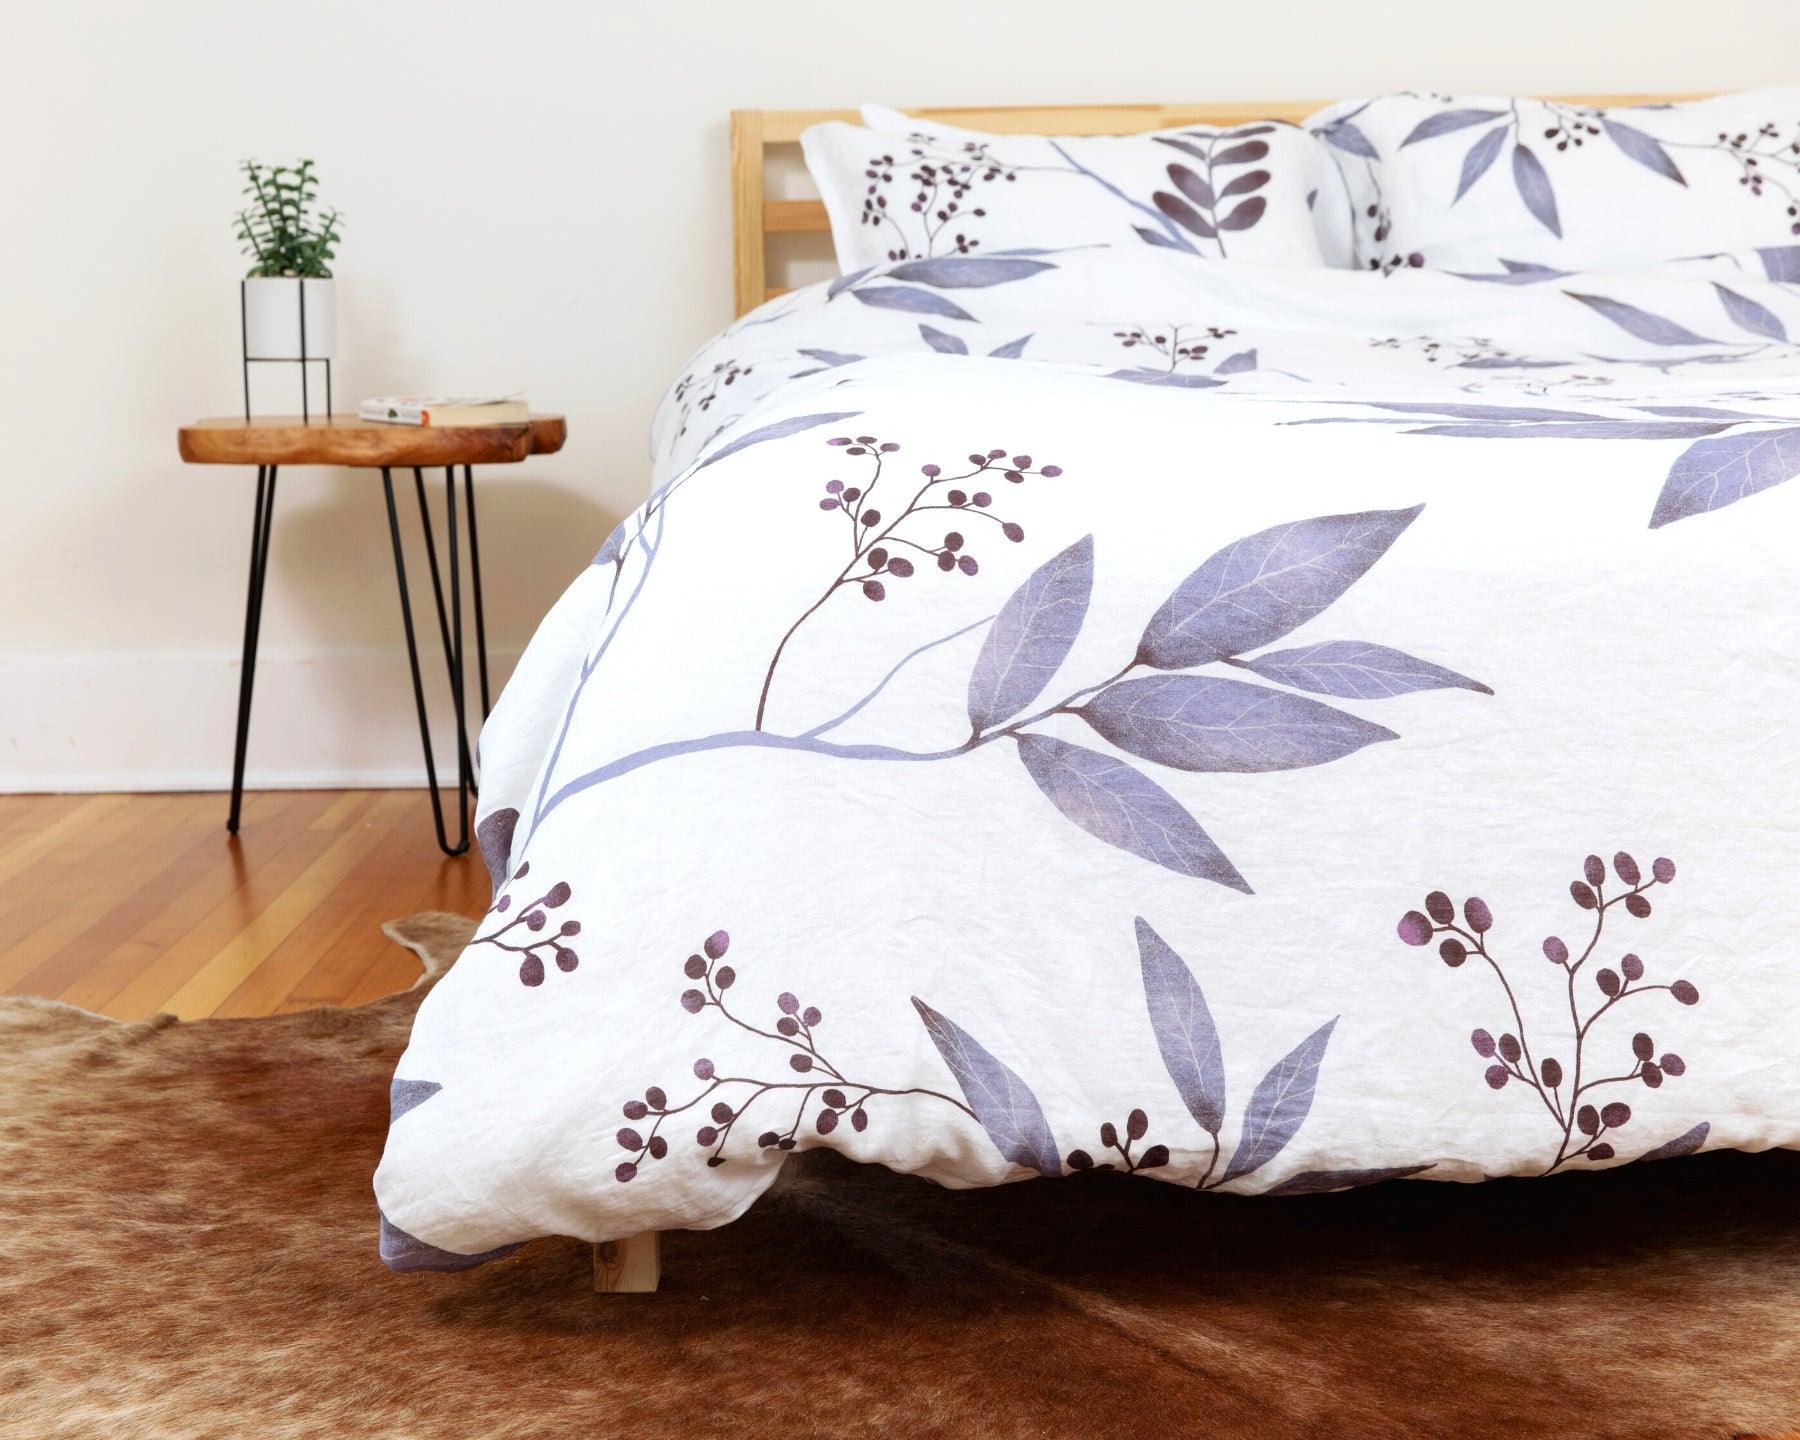 European organic linen duvet cover set in moderns Scandinavian design on white with purple leaves